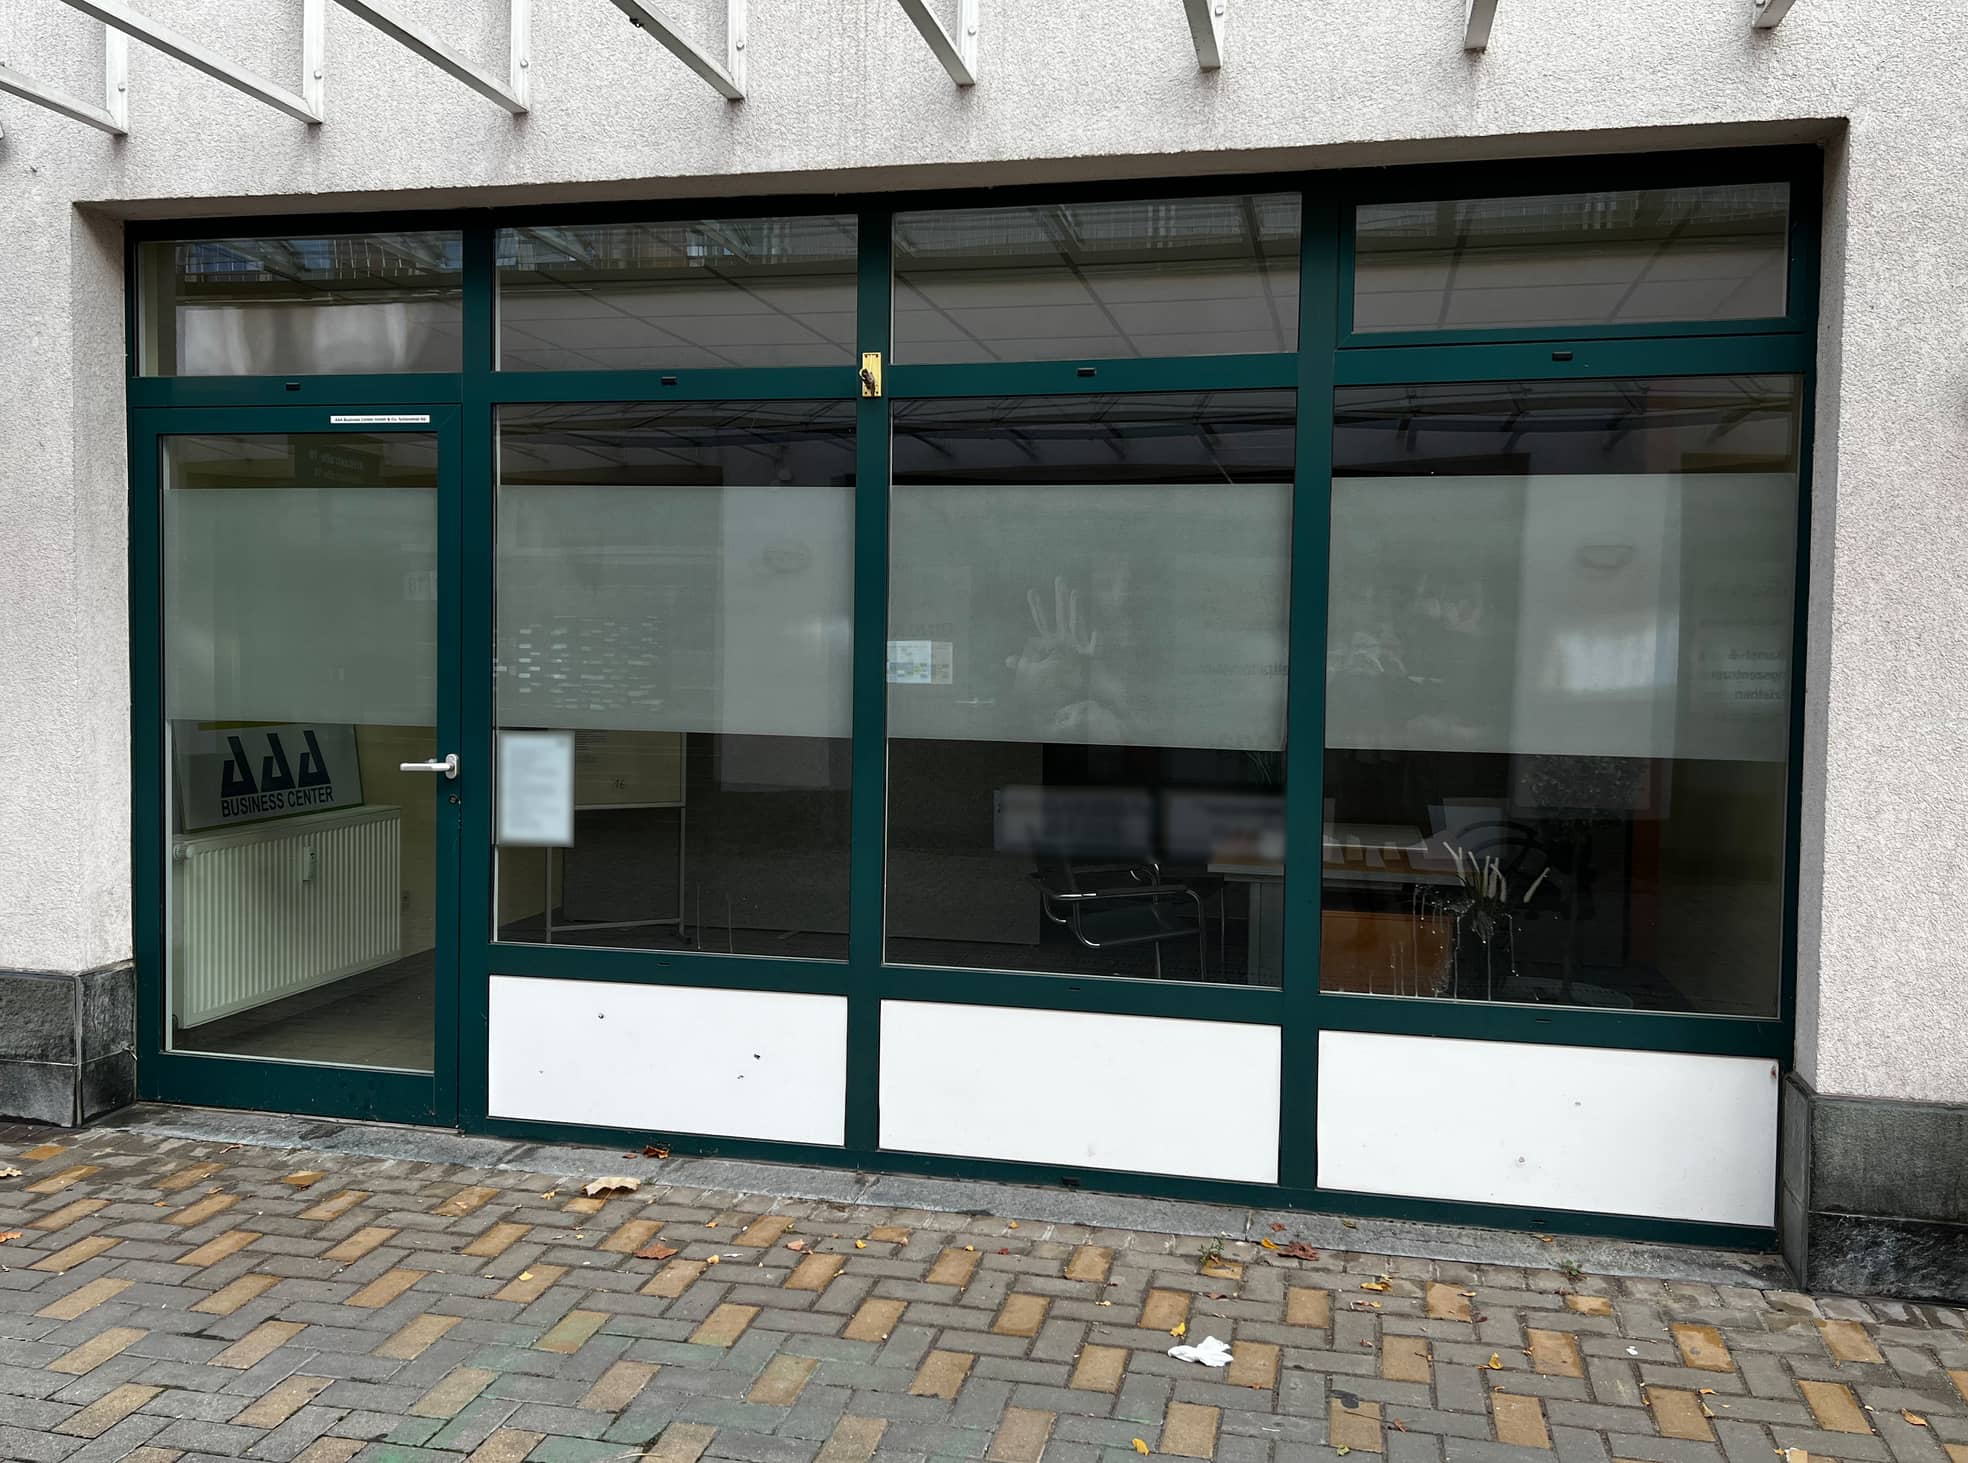 Das Ladenbüro in Schönefeld, Brandenburg, wirkt verlassen. Offiziell sitzen hier gleich mehrere Firmen.